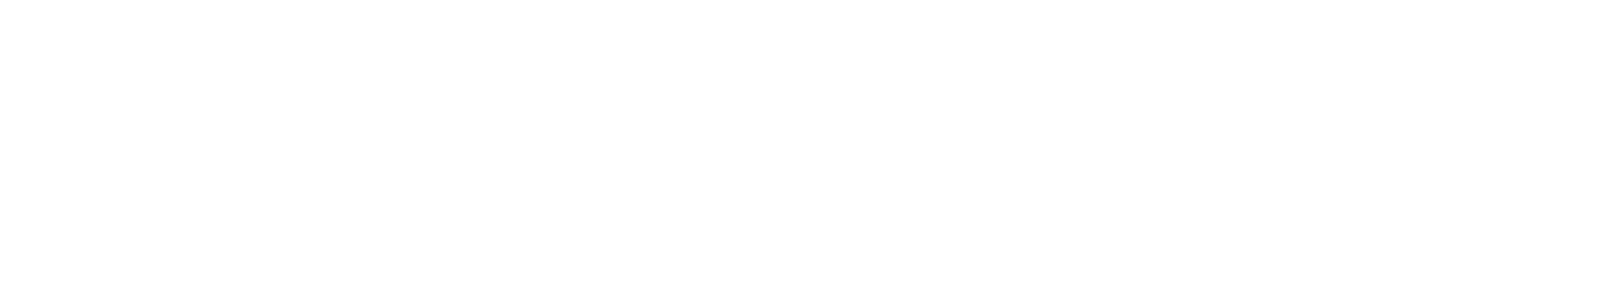 Manulife Financial logo large for dark backgrounds (transparent PNG)